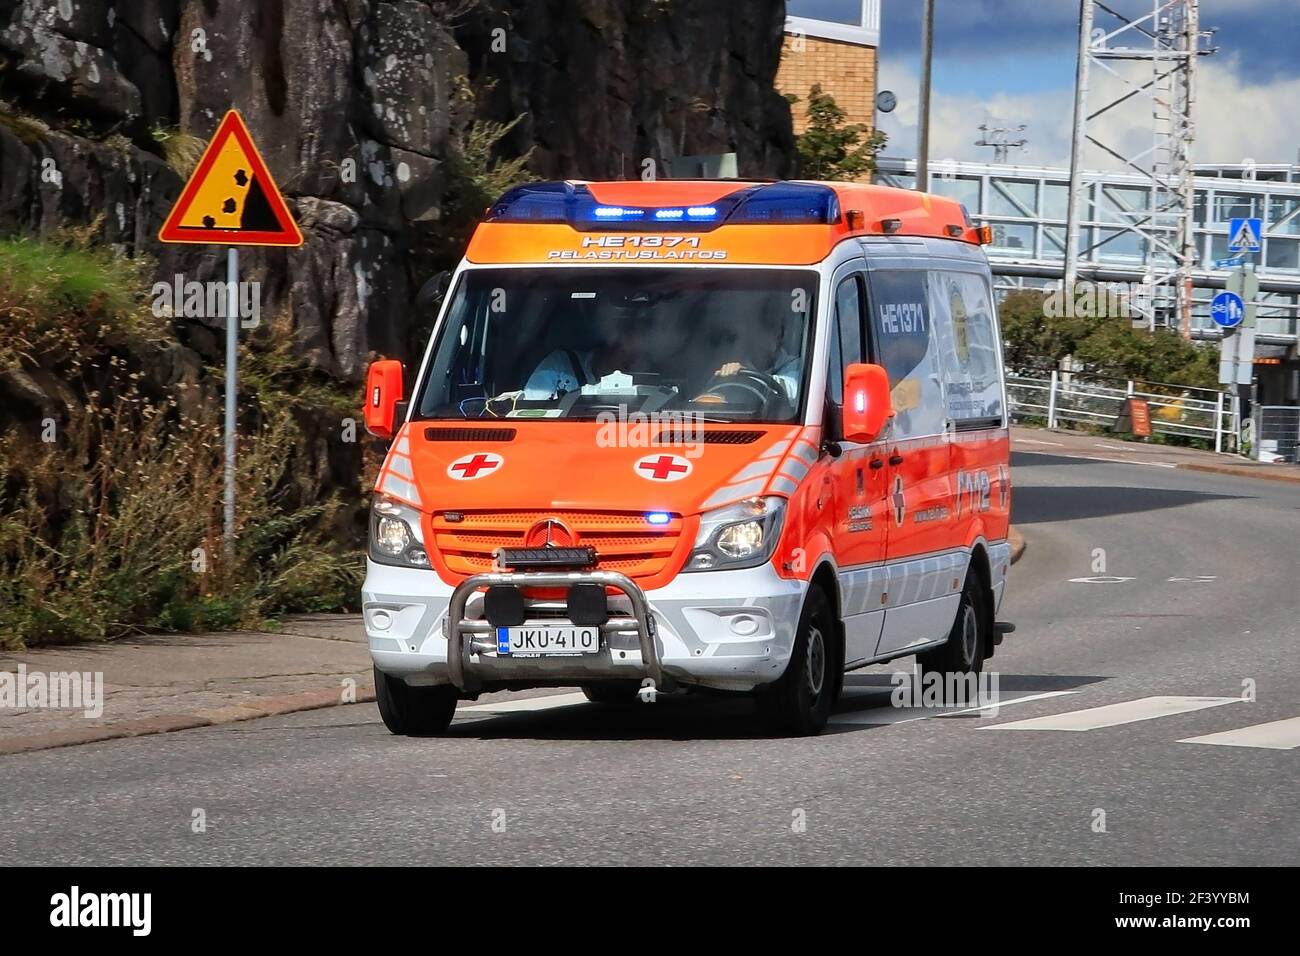 Rettungswagen auf Notruf Beschleunigung entlang der Straße während des Tages. Detail: Falling Rocks Verkehrsschild. Helsinki, Finnland. August 24 20. Stockfoto